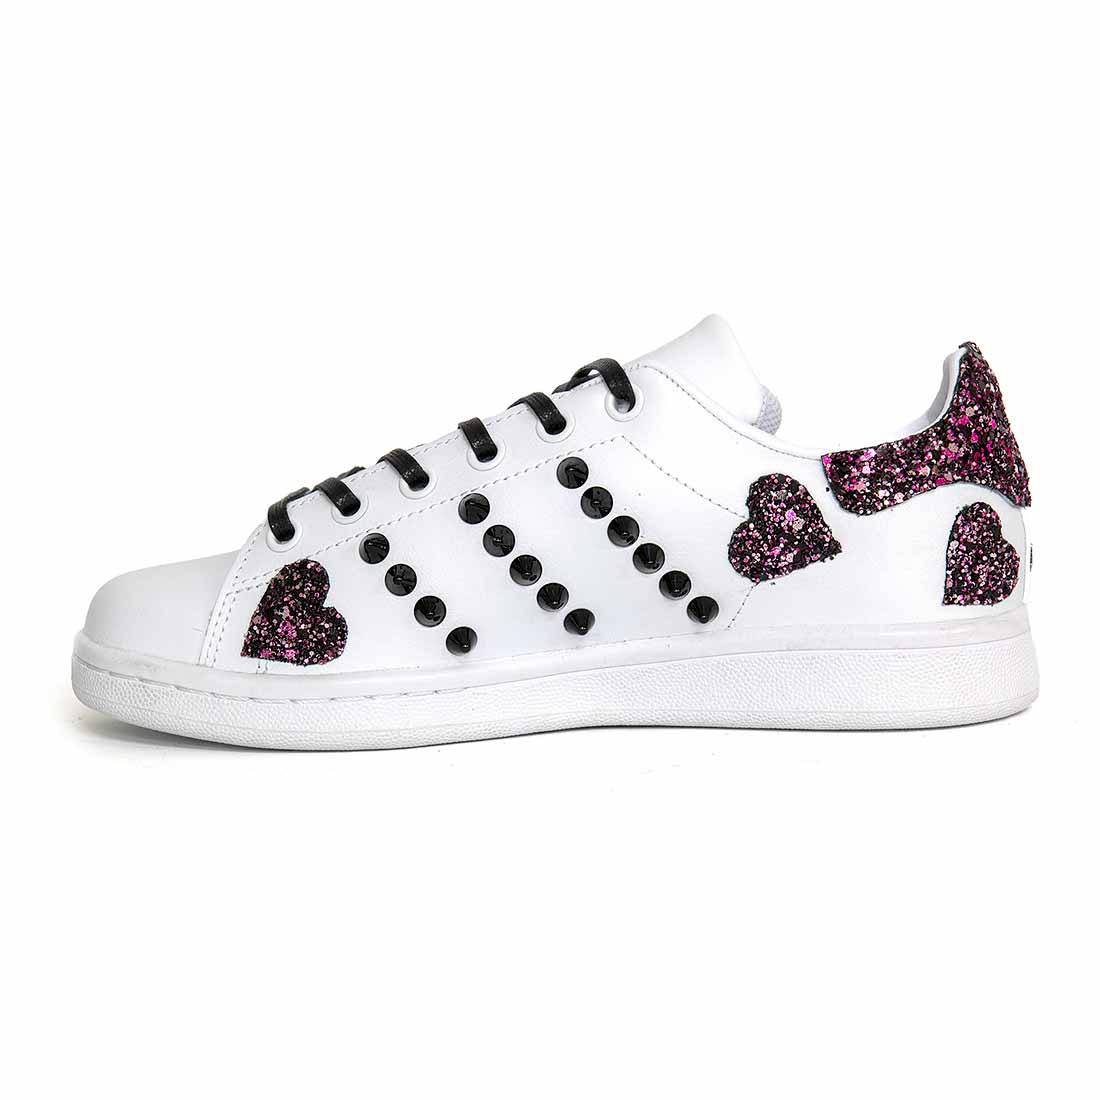 sneakers personalizzate con cuoricini in glitter viola e borchiate